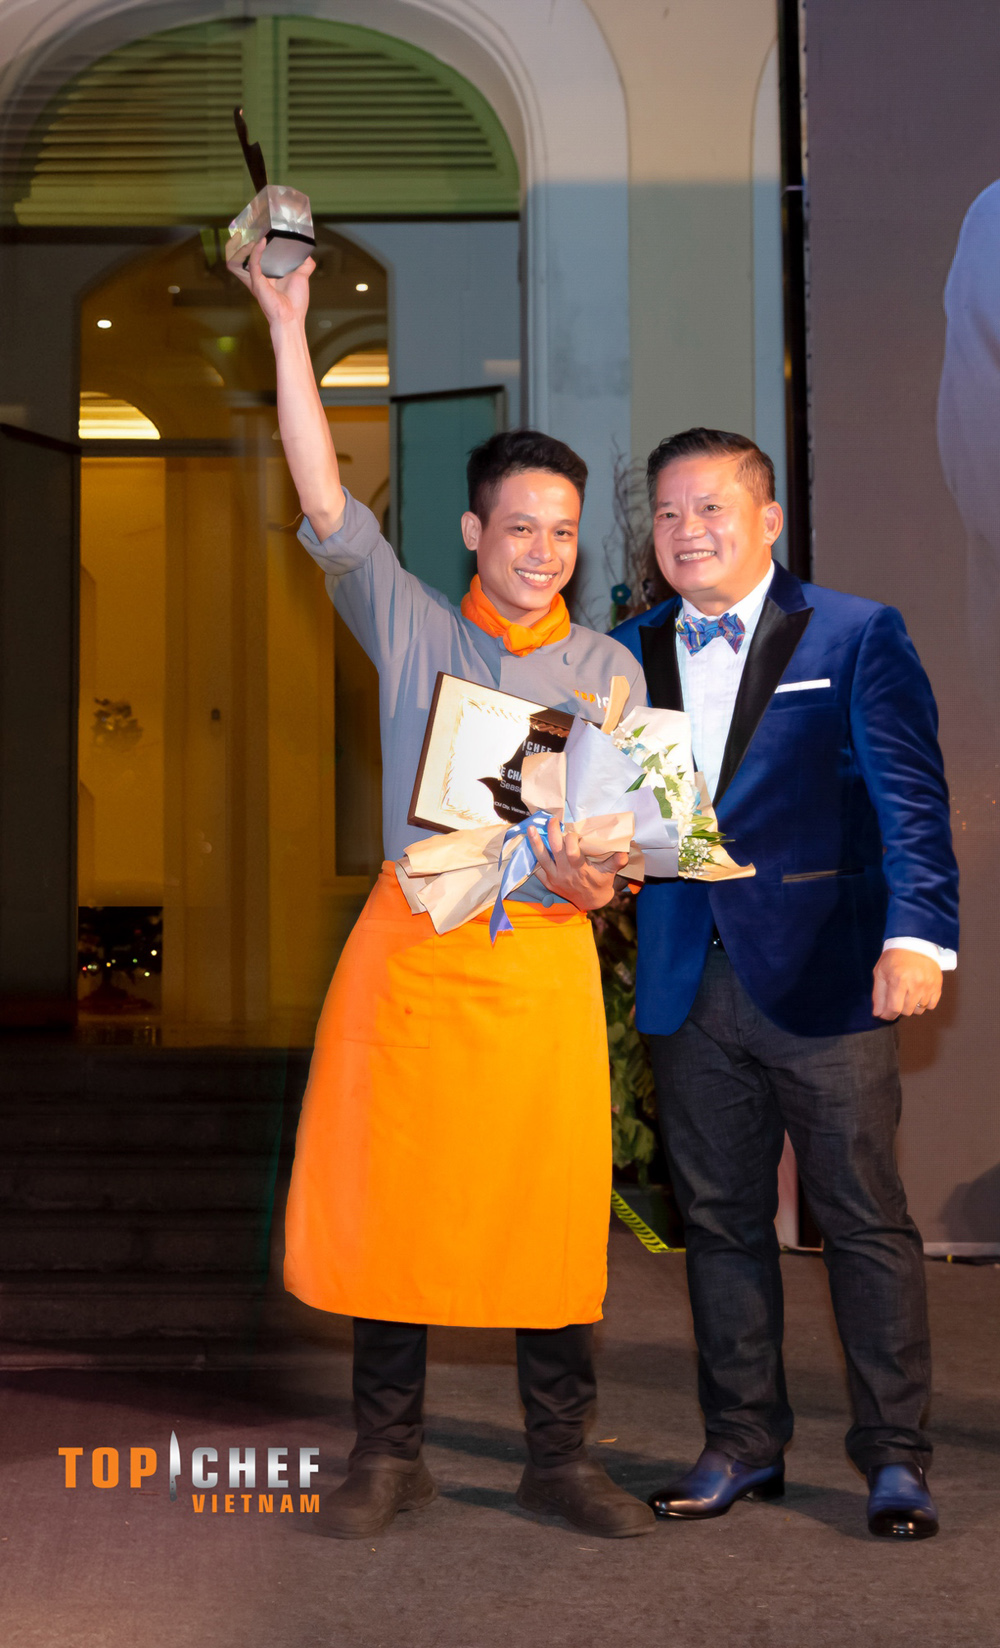 Giám khảo Dương Huy Khải trao giải Quán Quân cho chef Võ Thành Vương